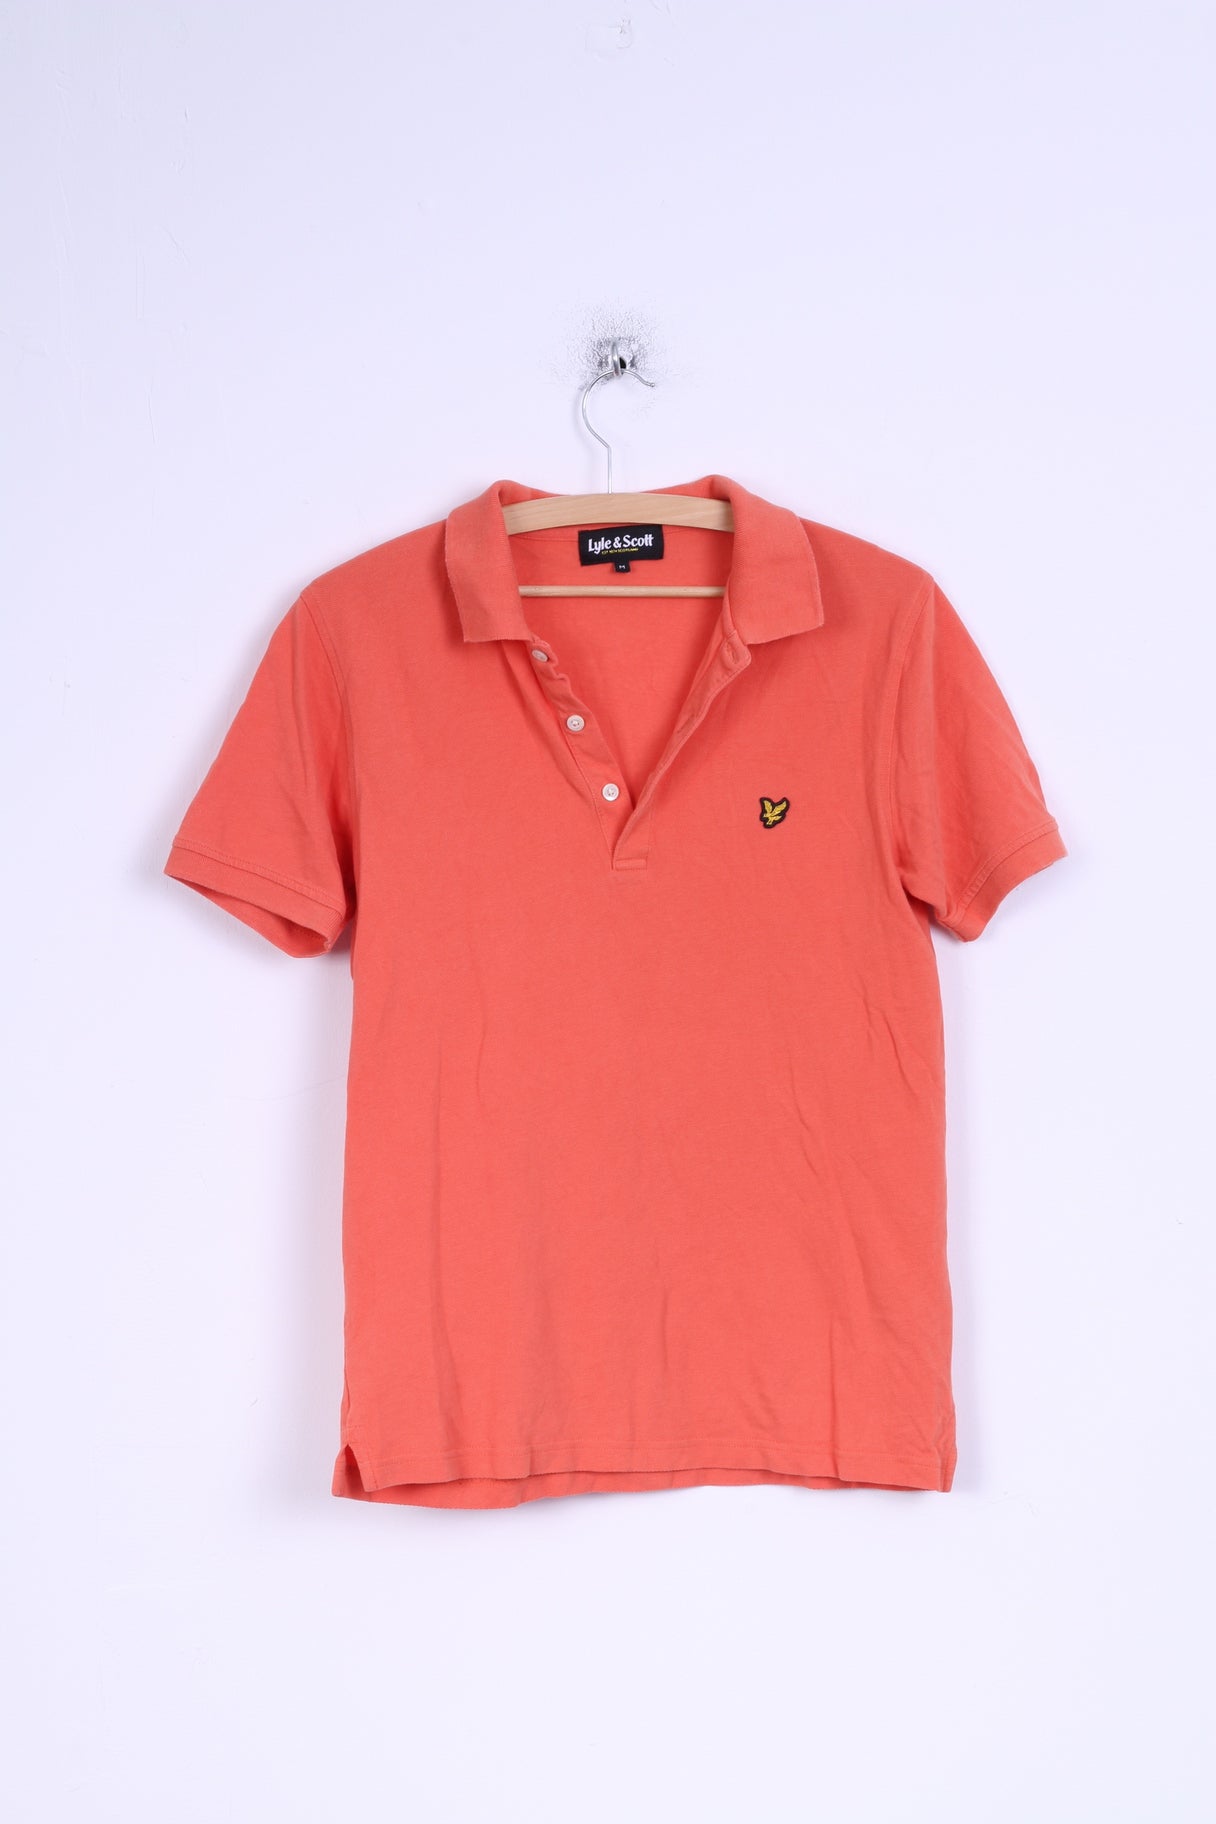 Lyle & Scott Mens M (S) Polo Shirt Cotton Coral Detailed Buttons